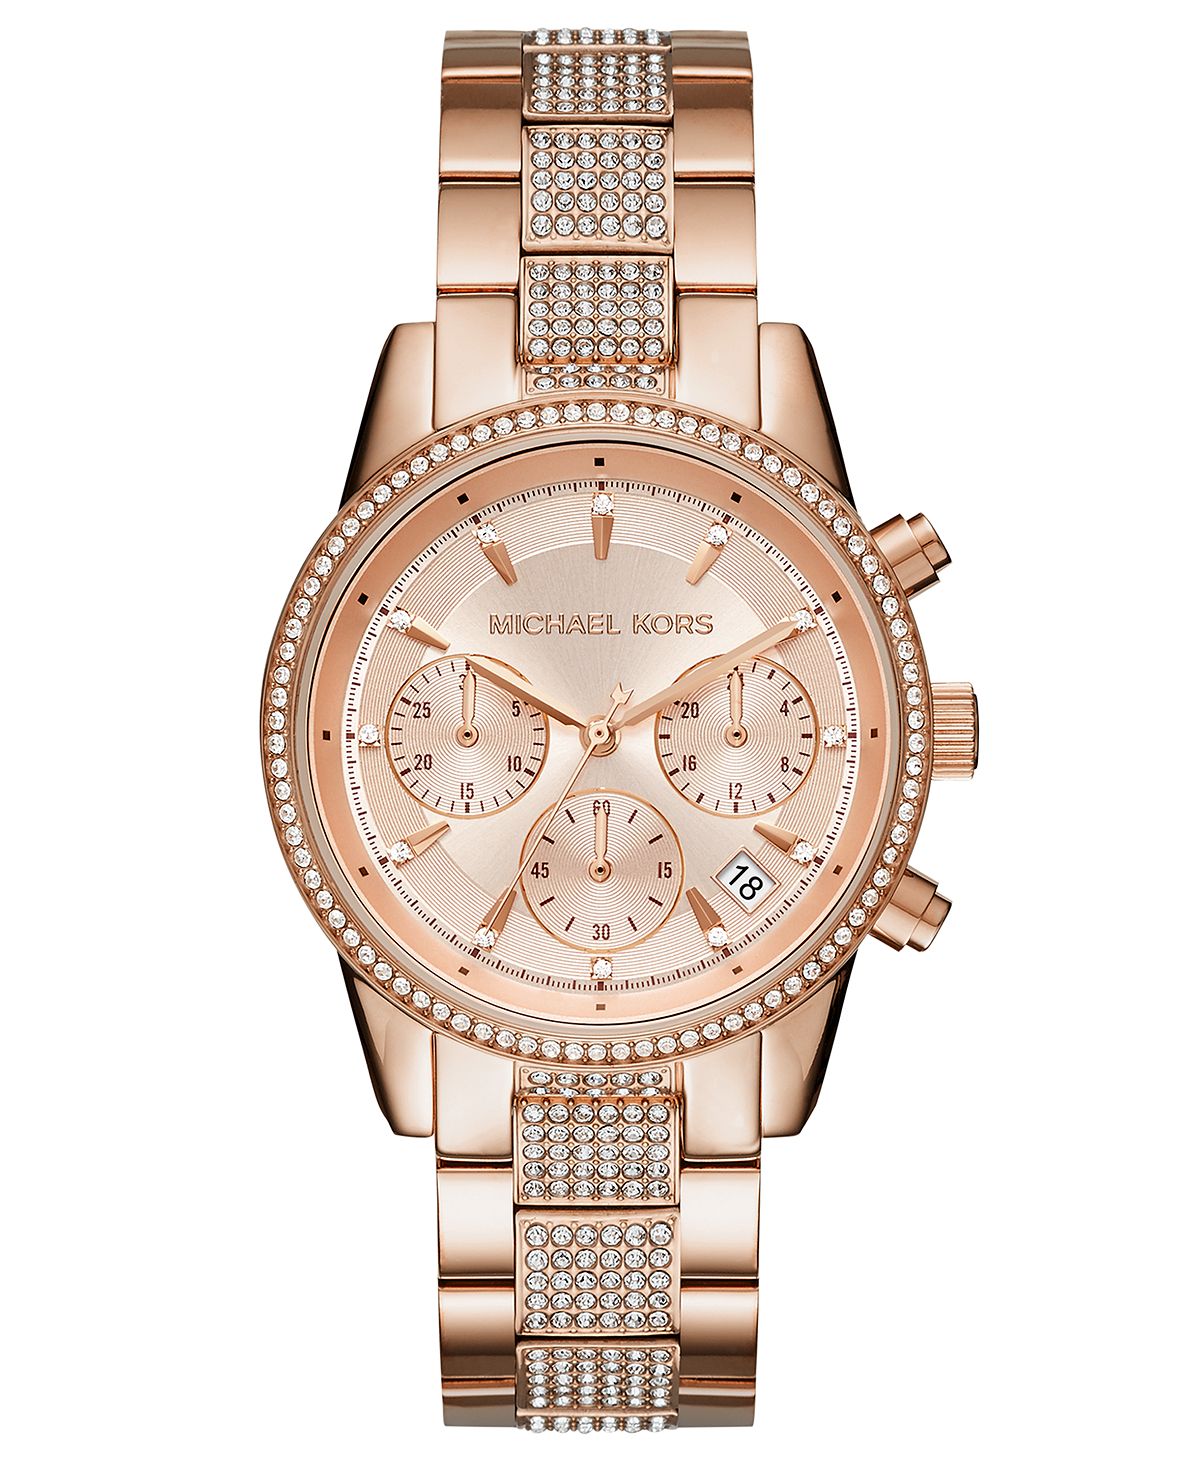 Женские часы Ritz с хронографом и браслетом из нержавеющей стали цвета розового золота, 37 мм Michael Kors цена и фото